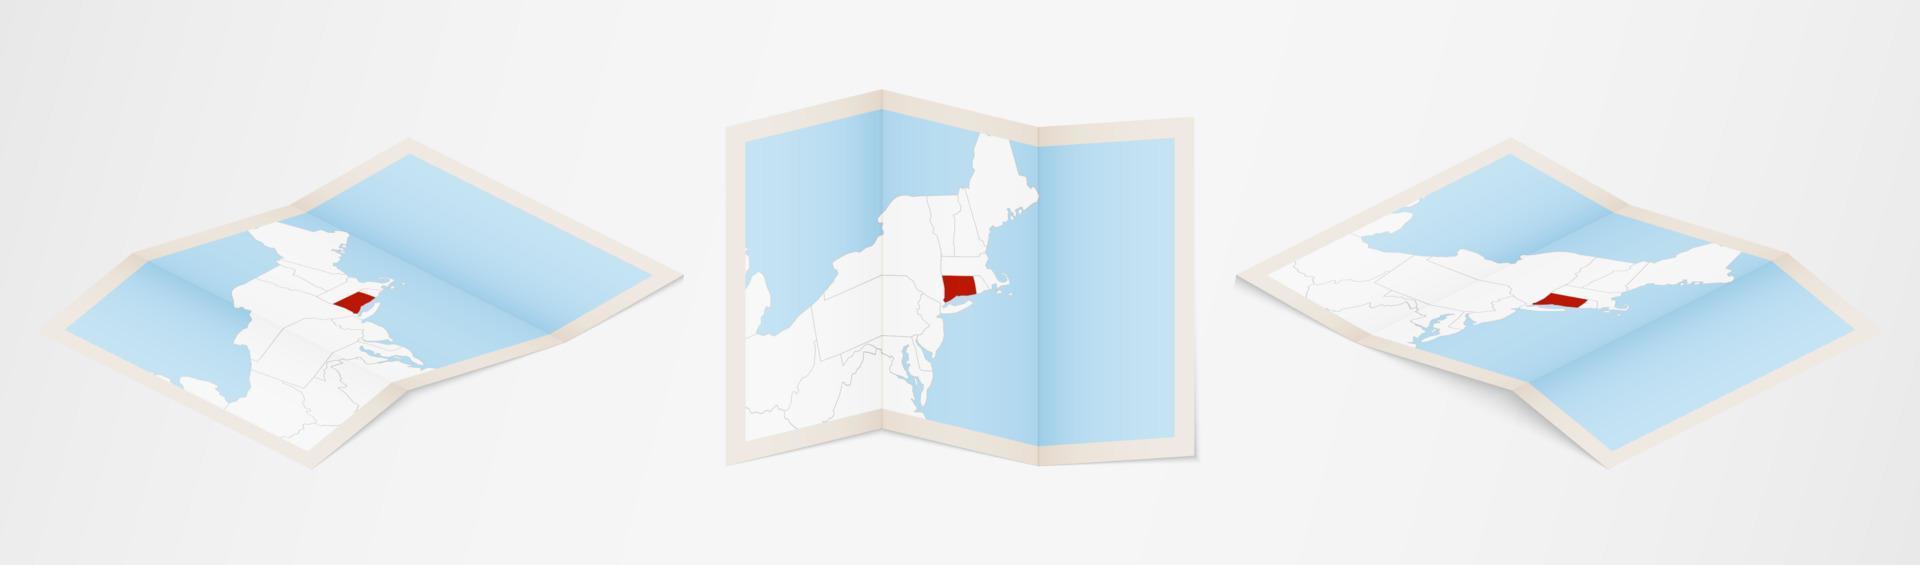 piegato carta geografica di Connecticut nel tre diverso versioni. vettore